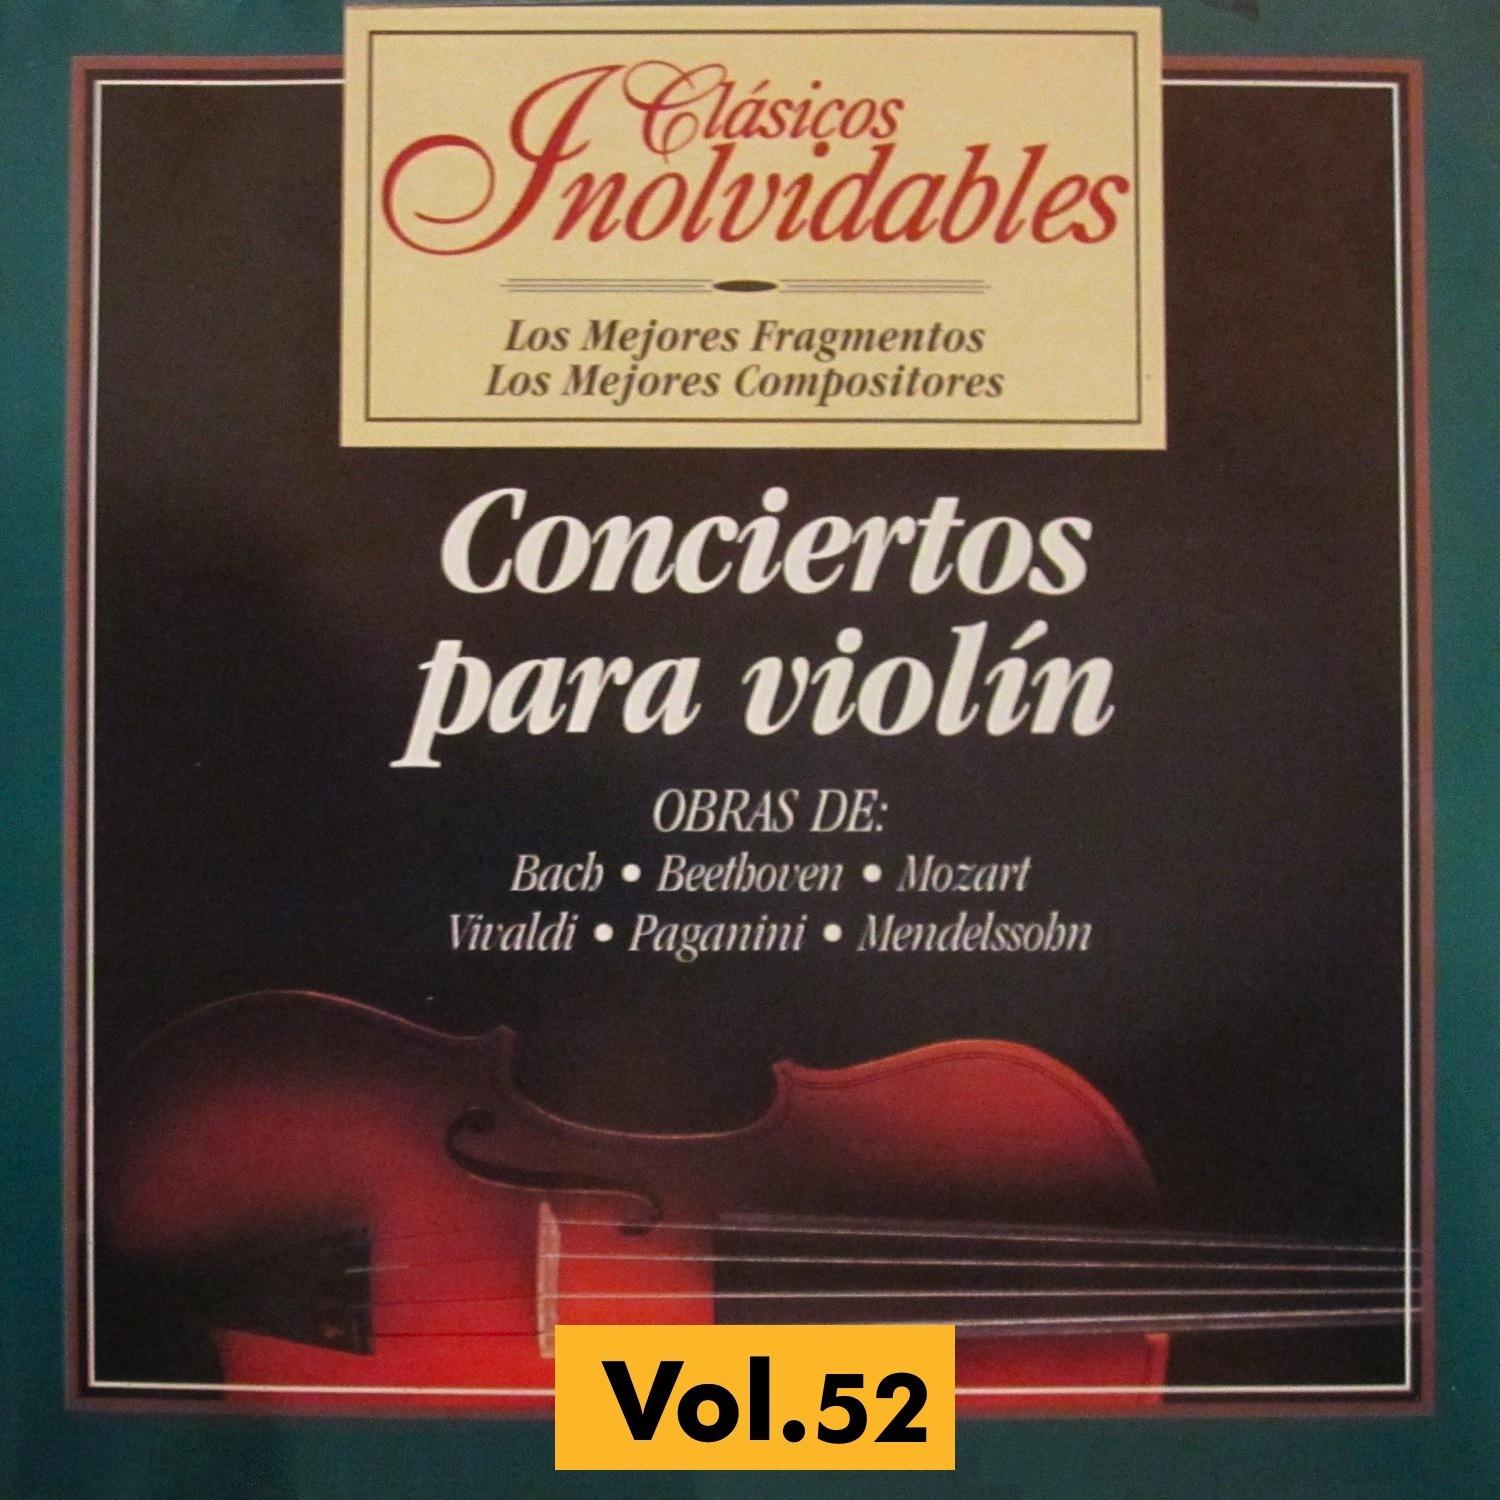 Clásicos Inolvidables Vol. 52, Conciertos para Violín